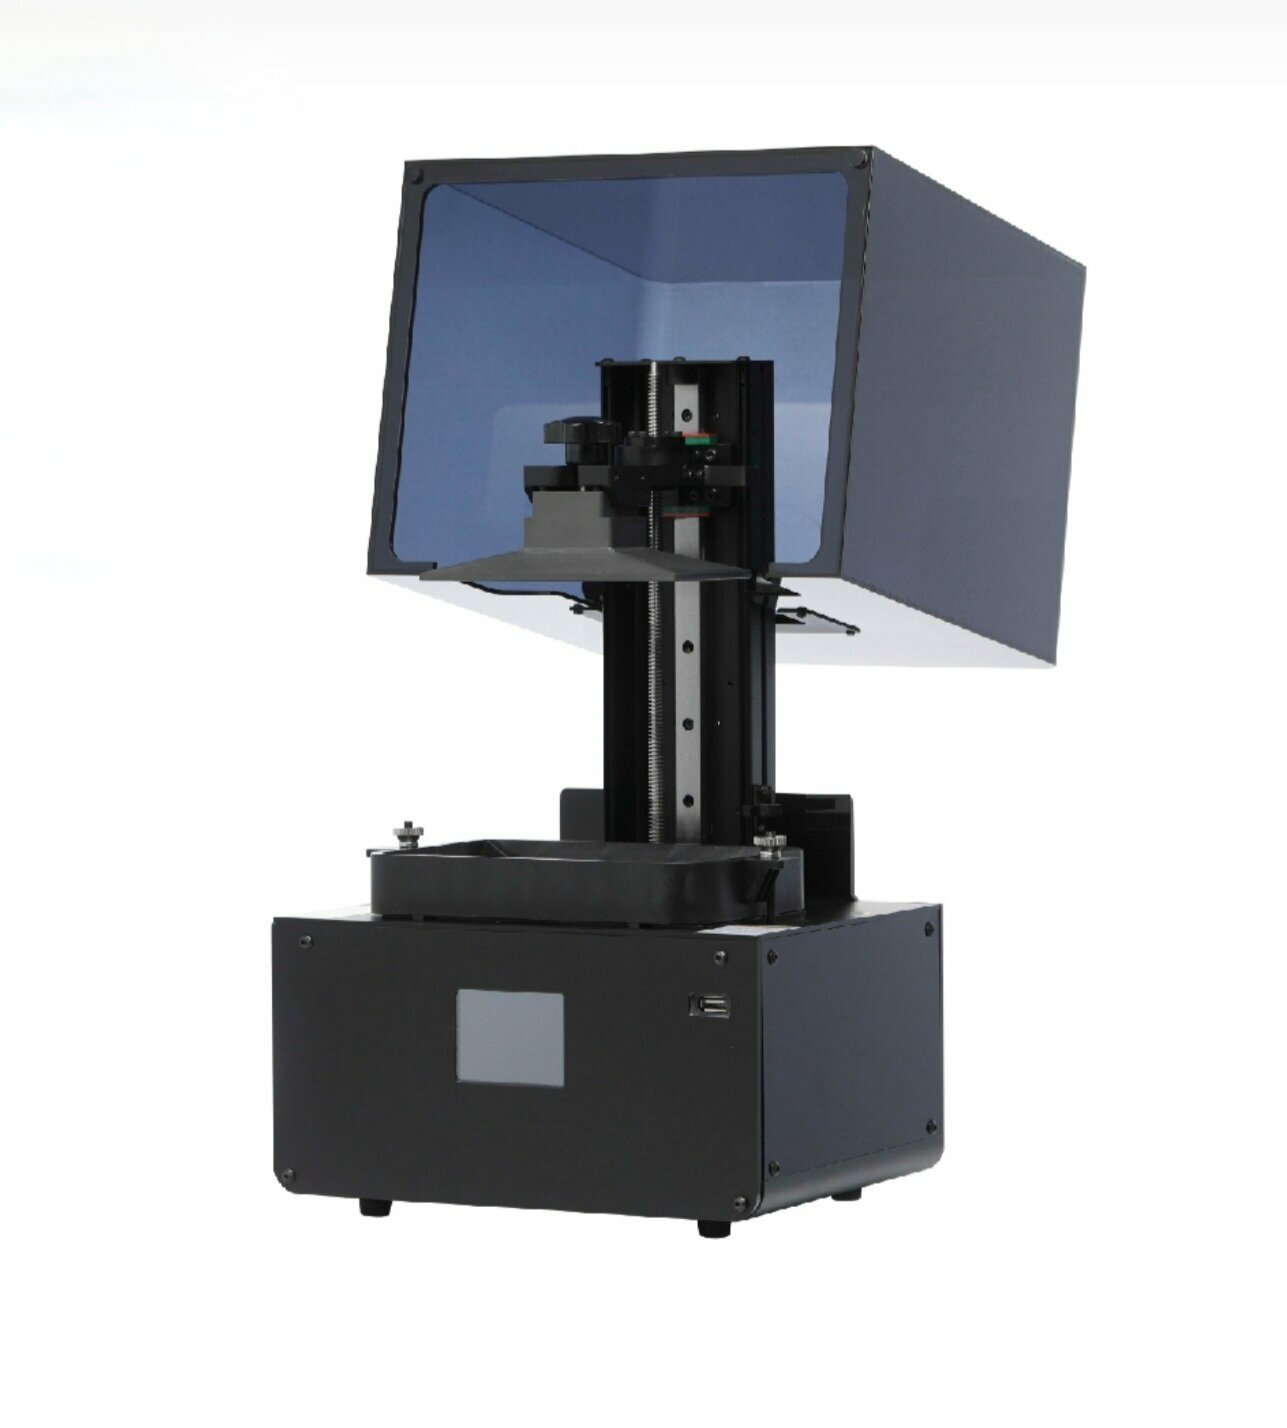 3D-принтер Rich-opto HT580 c ЖК дисплеем. Высокоточный, светочувствительный 3D-принтер для DIY